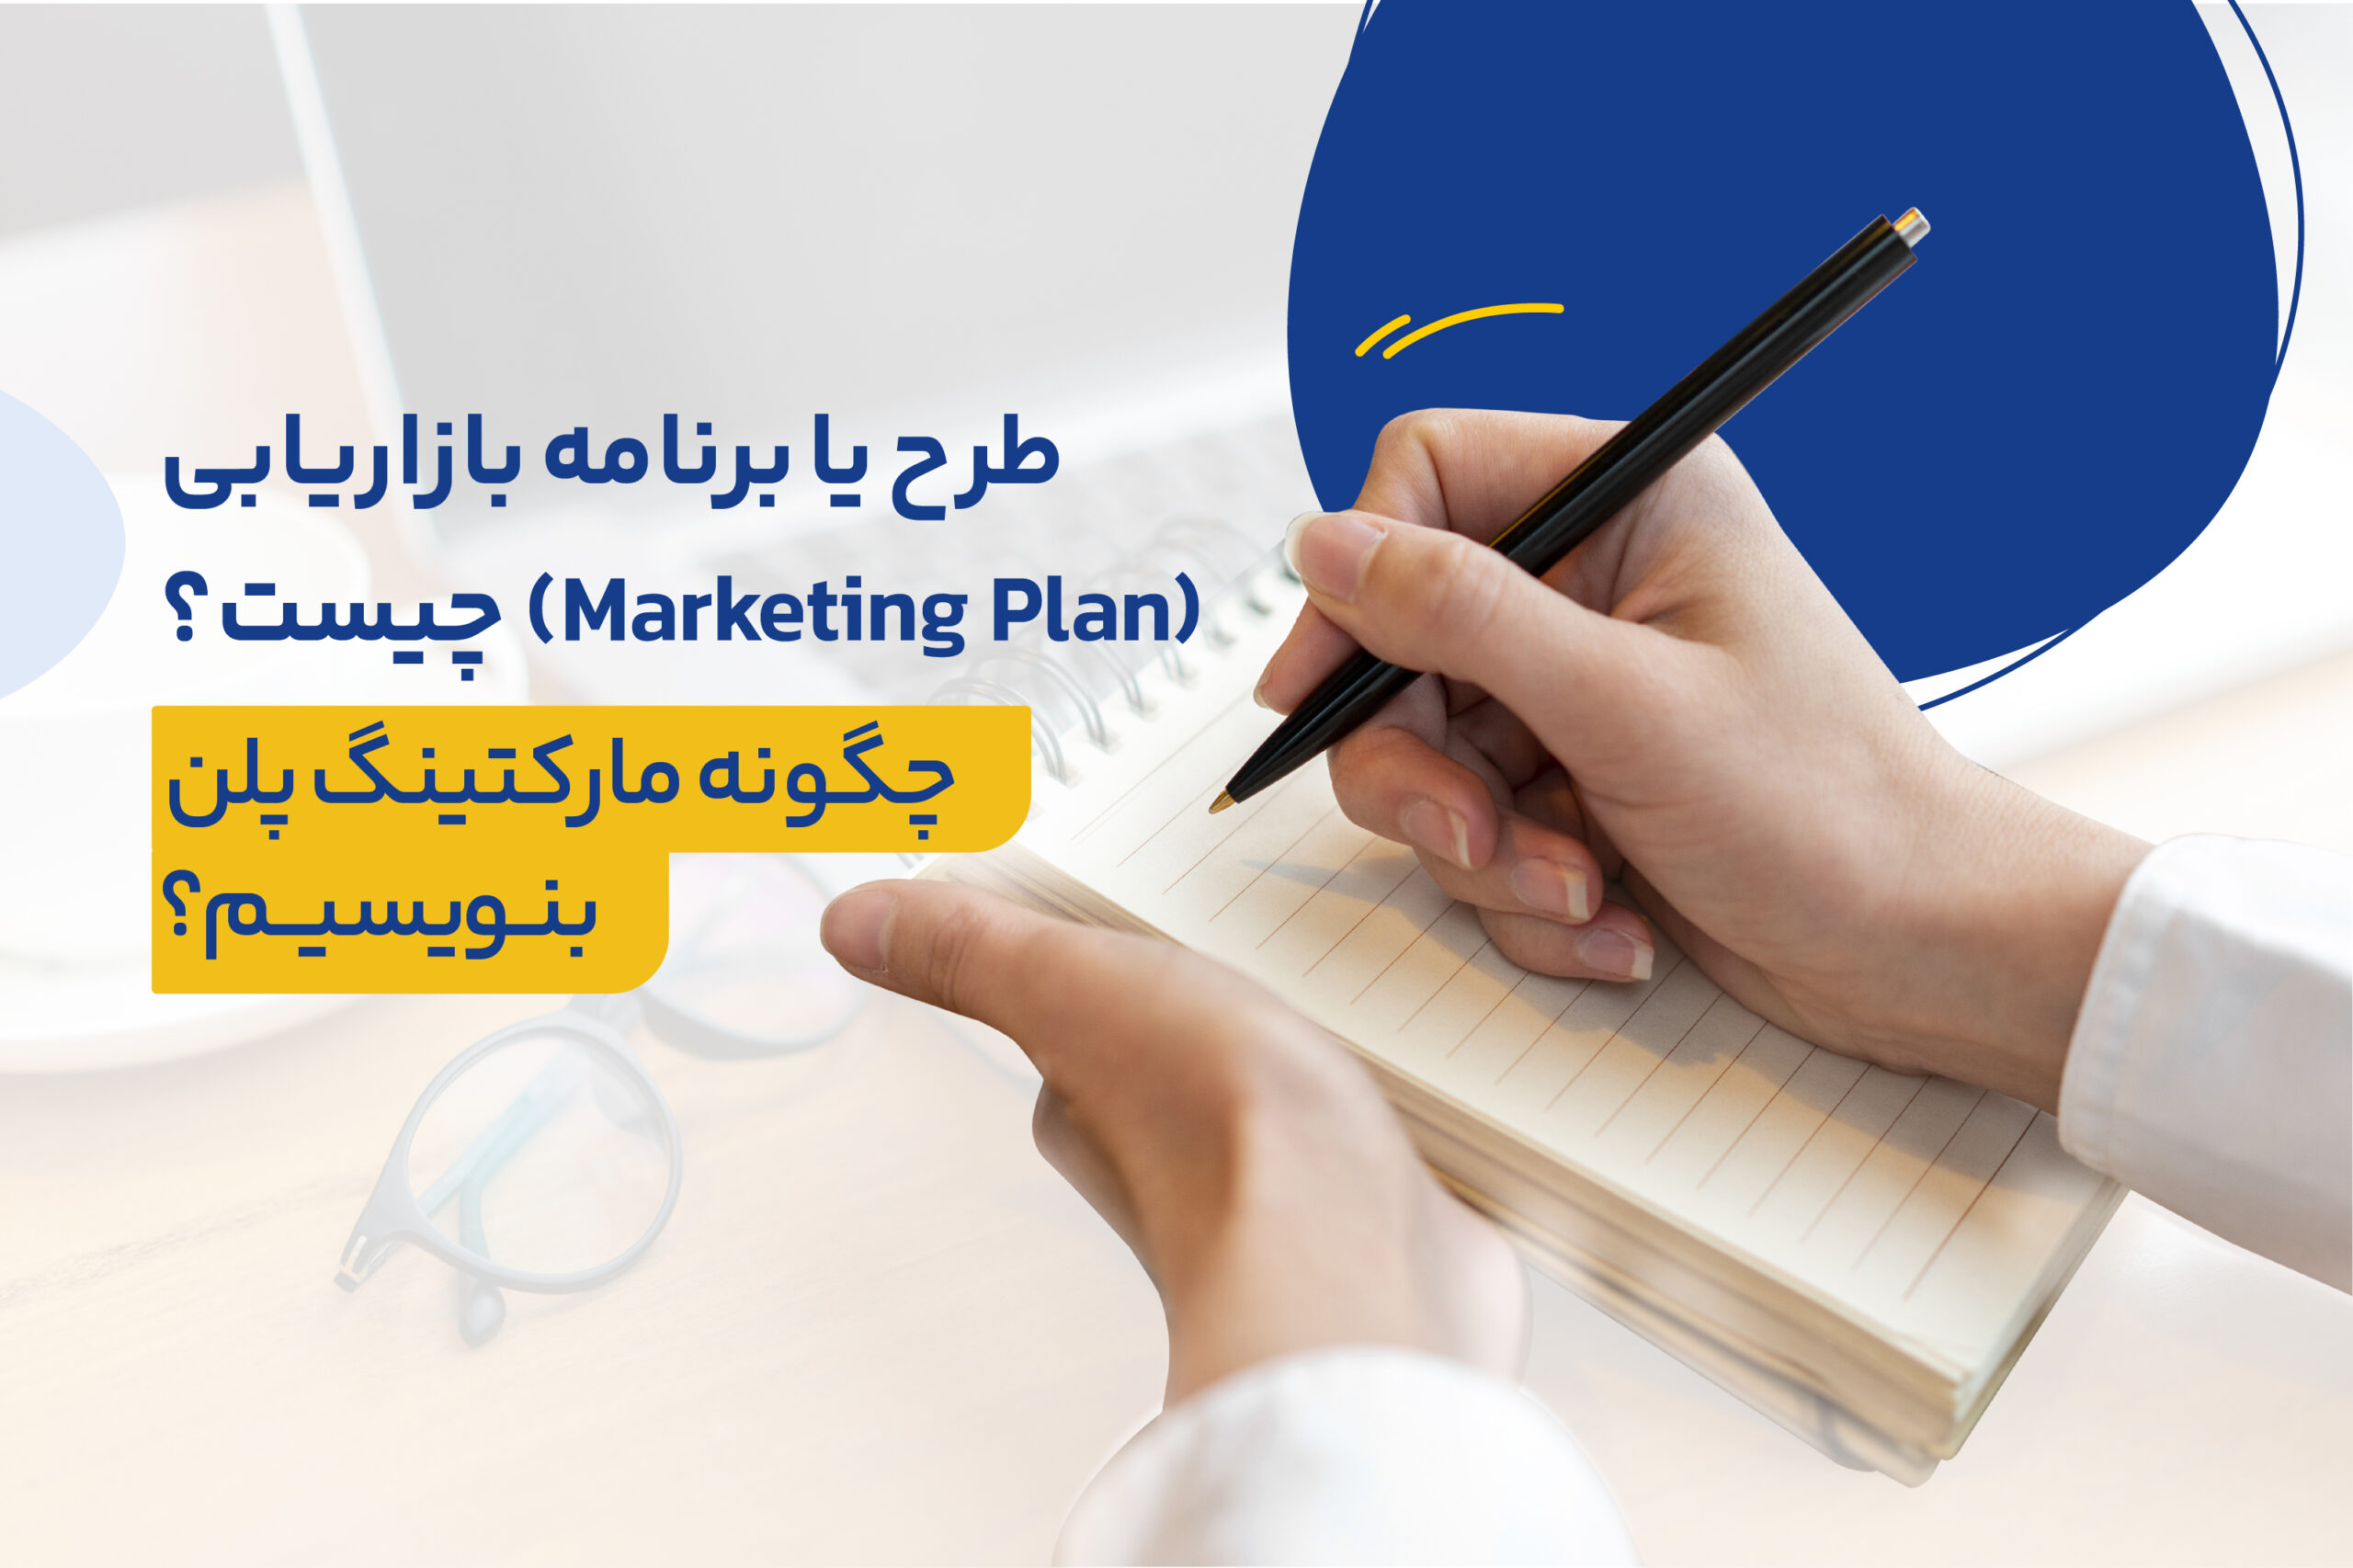 طرح یا برنامه بازاریابی (Marketing Plan) چیست؟